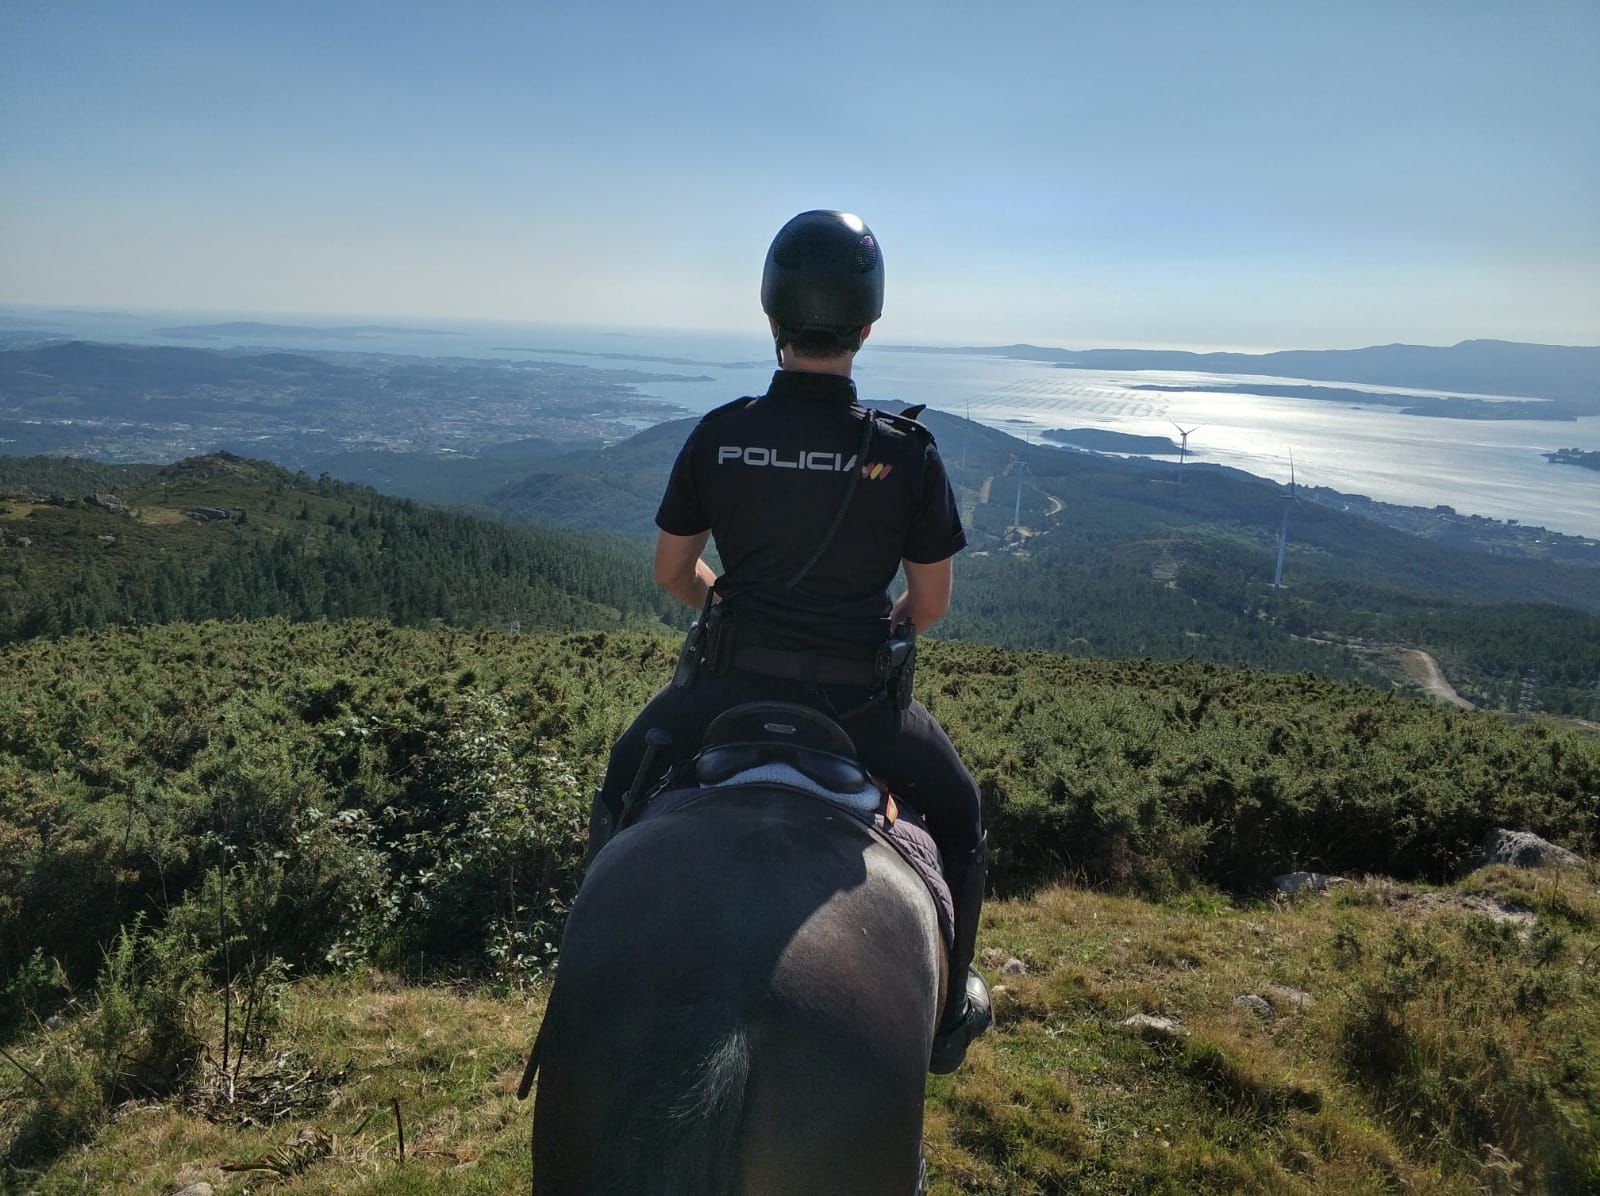 Un policía montado a caballo de espaldas, en lo alto de un monte desde el que se observa el mar y las montañas